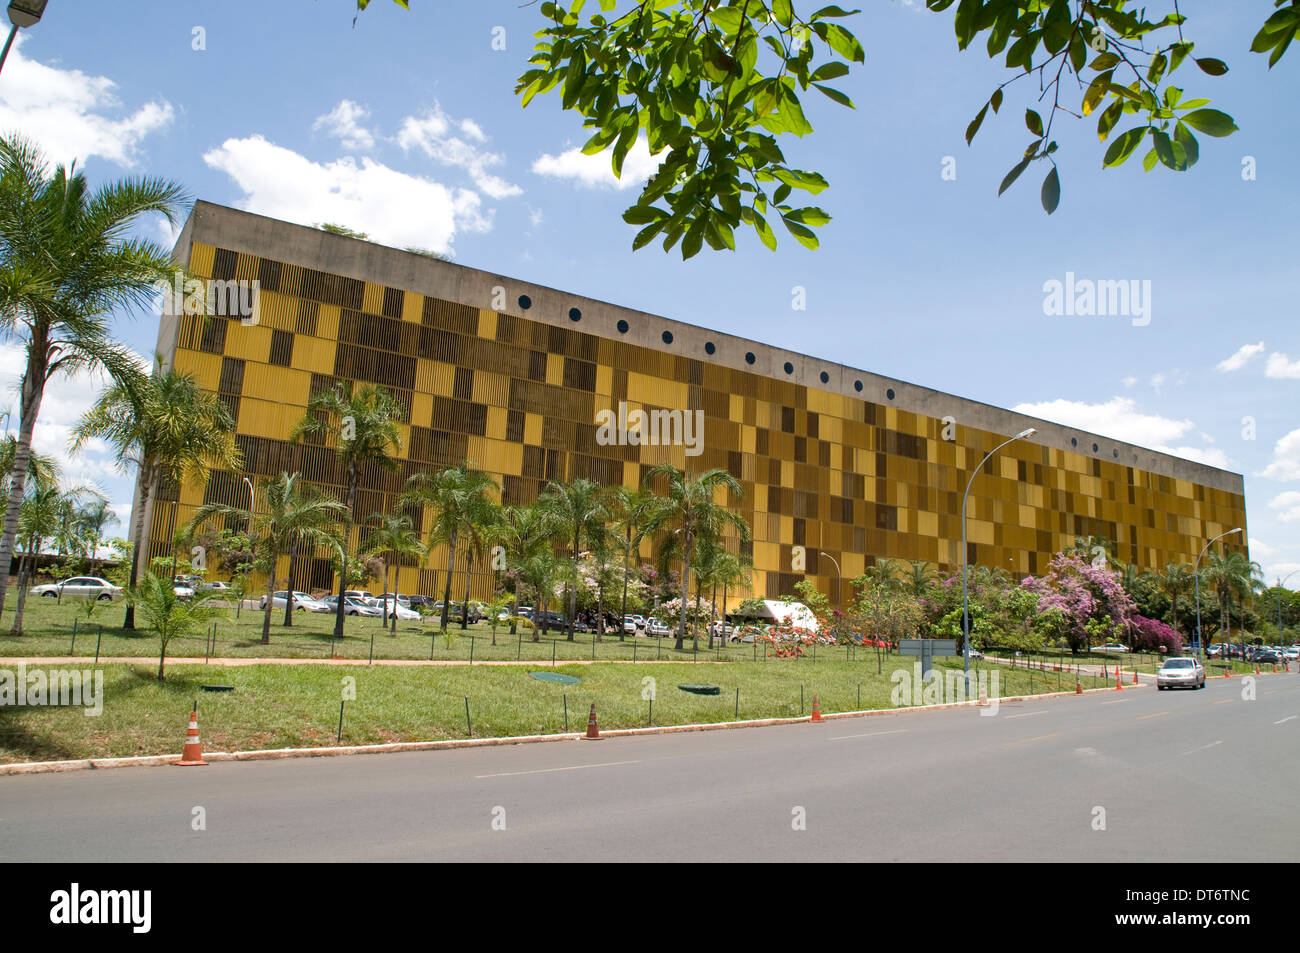 Anexo 4 Congrès national n'est les bureaux de chambre des députés de Brasilia, Brésil. Banque D'Images